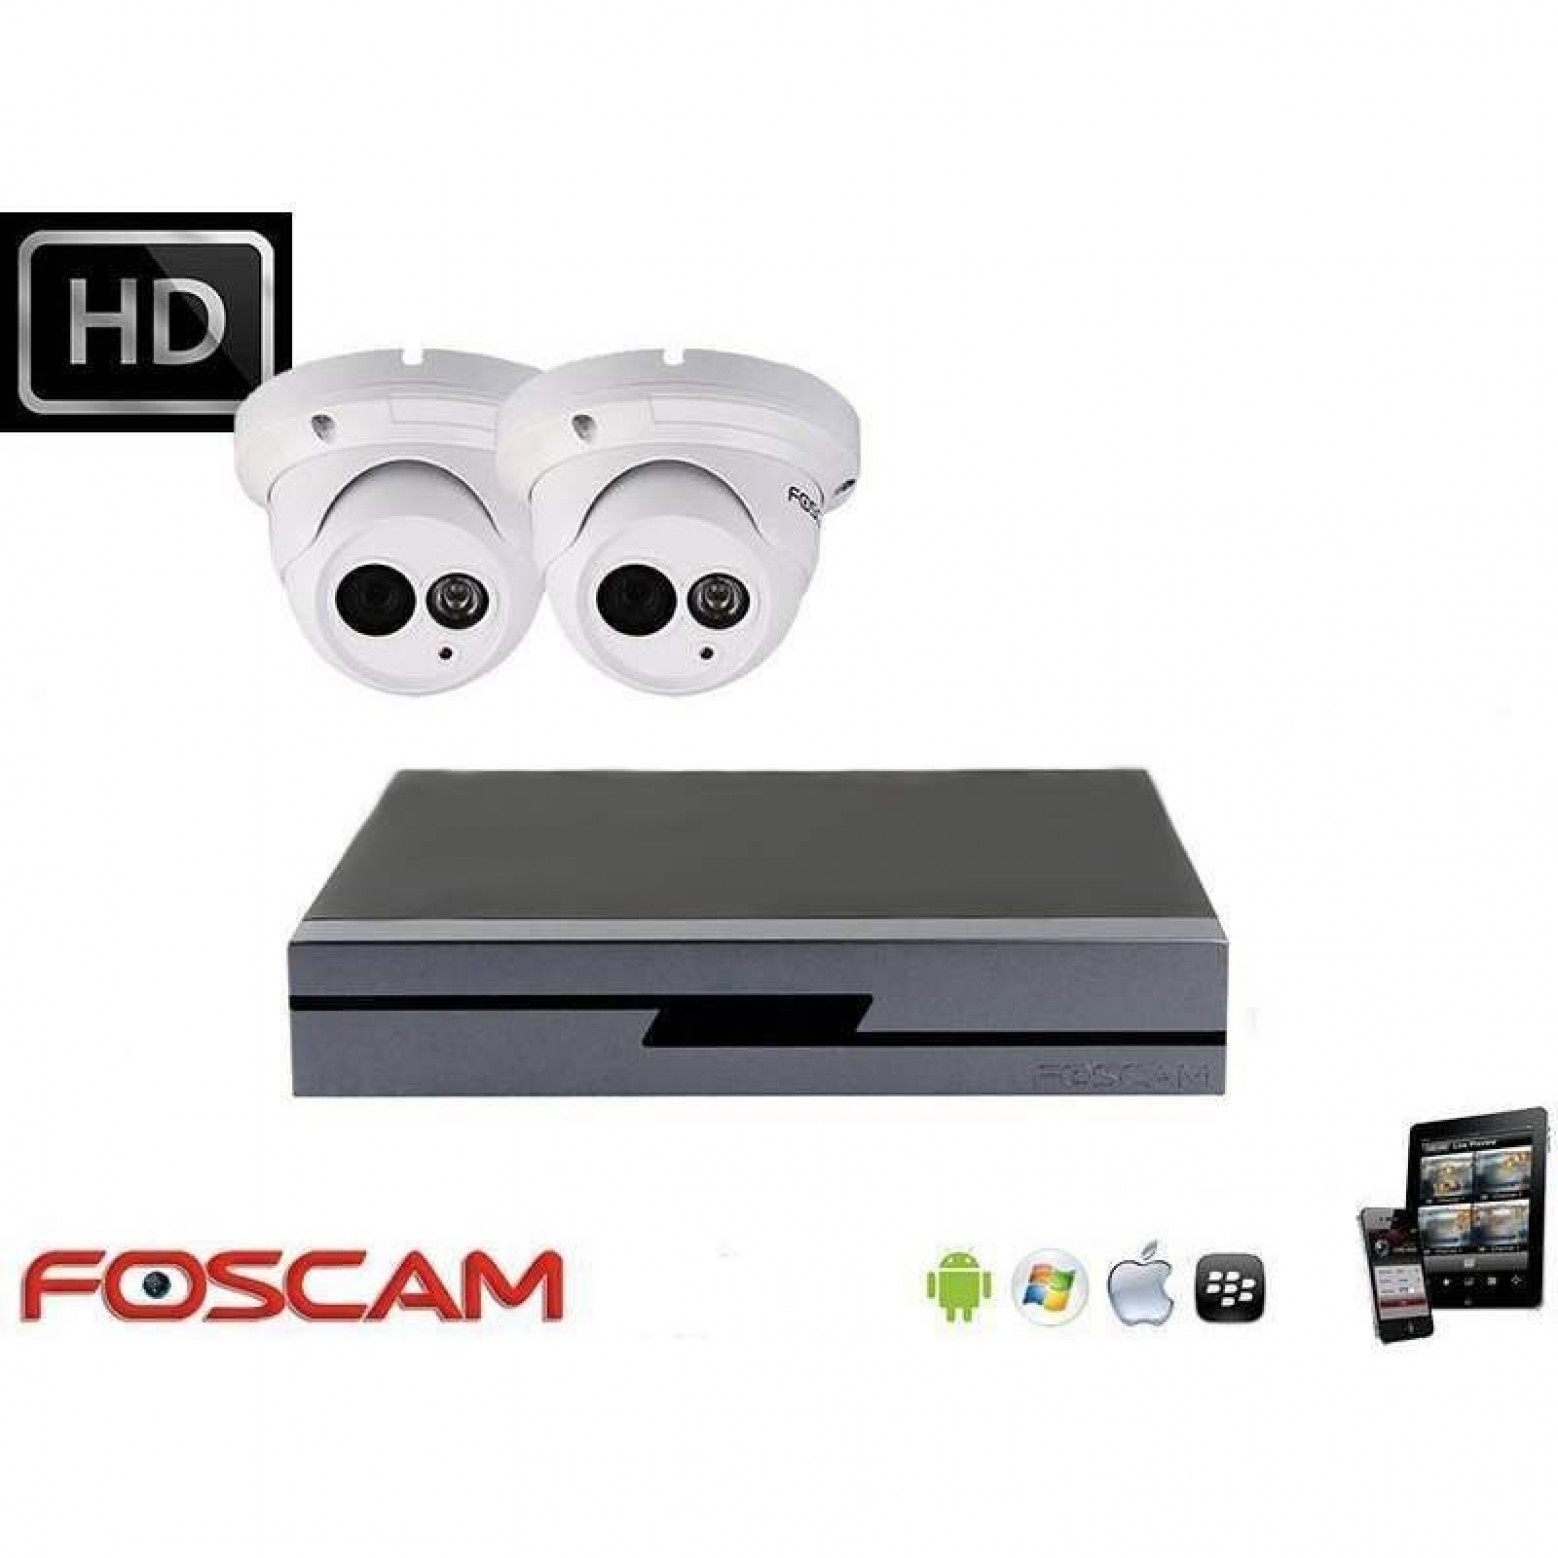 Foscam IP camerabewaking set 2x dome